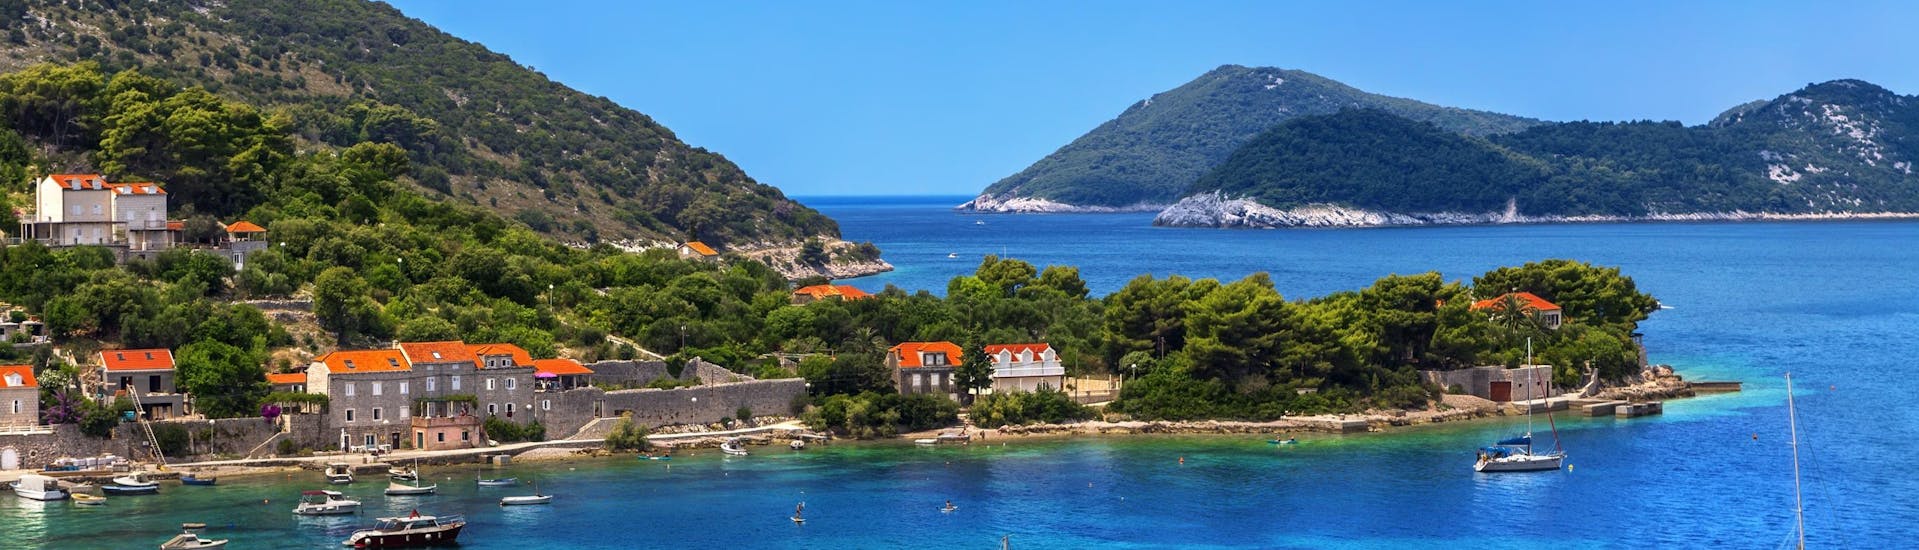 Immagine dell'isola di Kolocep, parte delle isole Elafiti vicino alla costa di Dubrovnik, una destinazione popolare per le gite in barca.